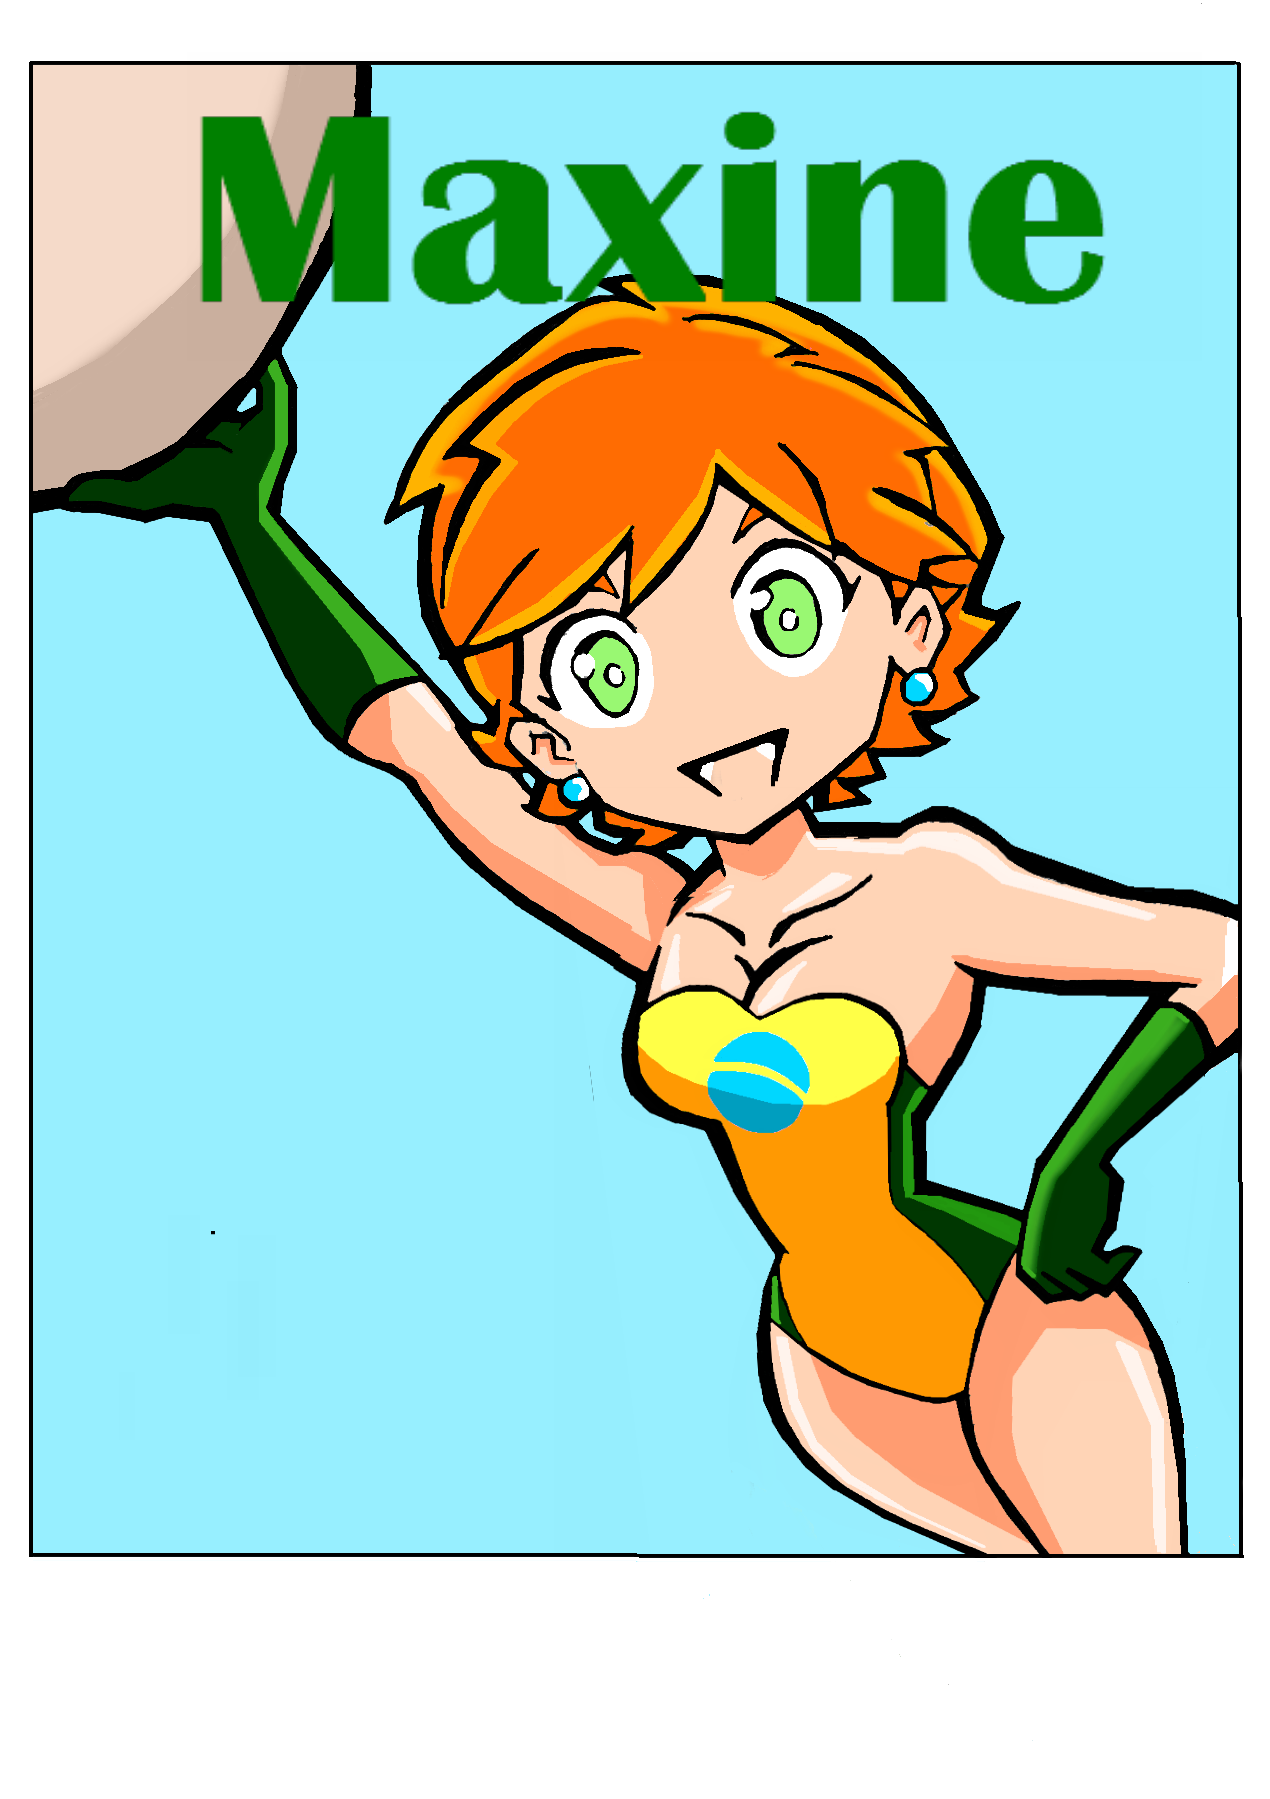 Maxine Manga Version By Reginaldo Nakamura